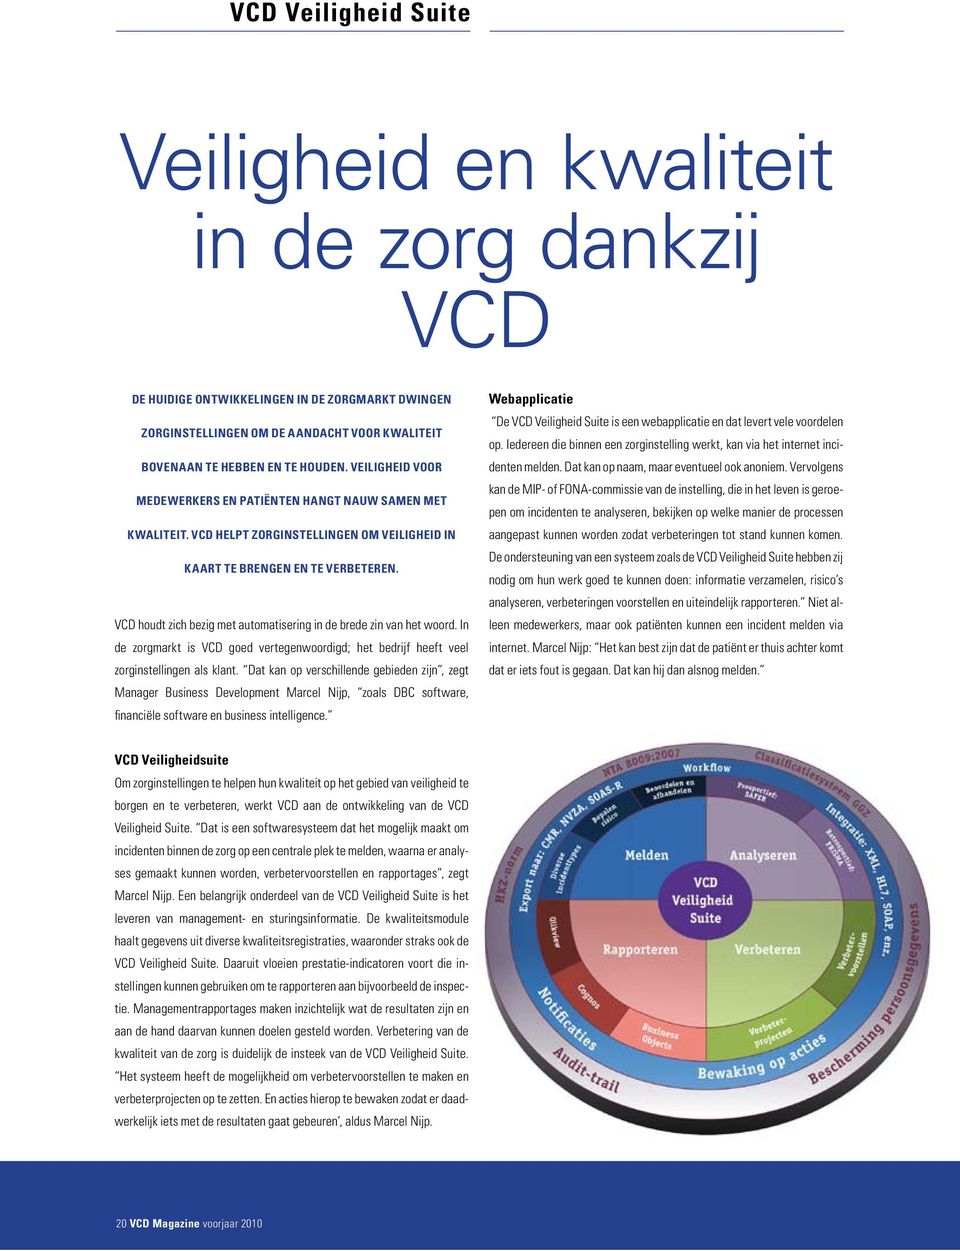 VCD houdt zich bezig met automatisering in de brede zin van het woord. In de zorgmarkt is VCD goed vertegenwoordigd; het bedrijf heeft veel zorg instellingen als klant.